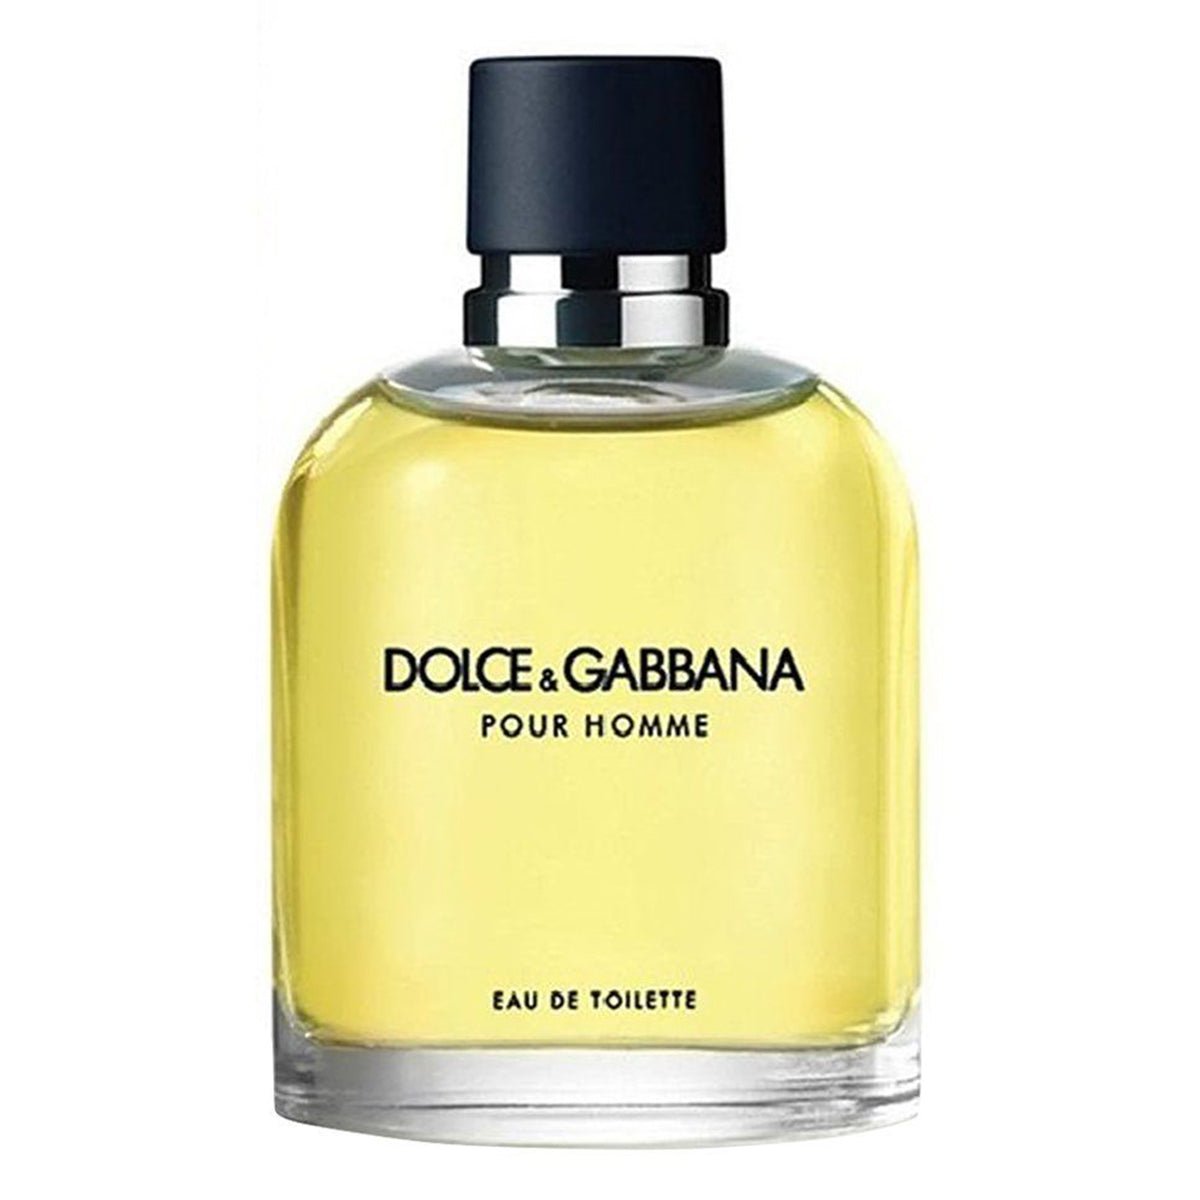 Dolce & Gabbana Pour Homme Edt Vapo For Men 125ml - AllurebeautypkDolce & Gabbana Pour Homme Edt Vapo For Men 125ml